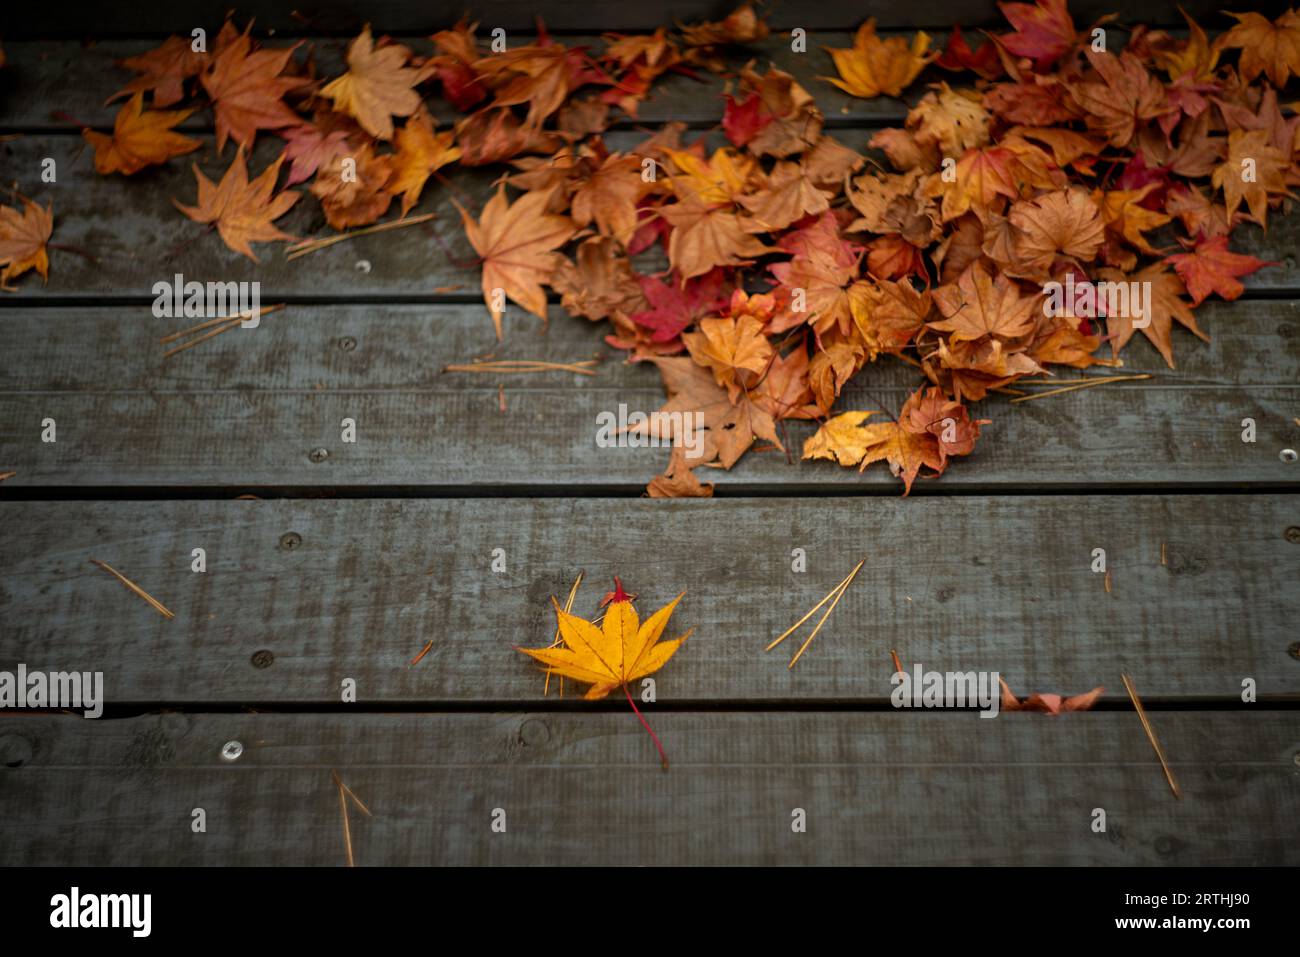 Splendido paesaggio autunnale. Foglie colorate in autunno. Le stagioni delle foglie d'acero cadono. Le foglie d'acero diventano gialle, arancioni e rosse in autunno. Foto Stock